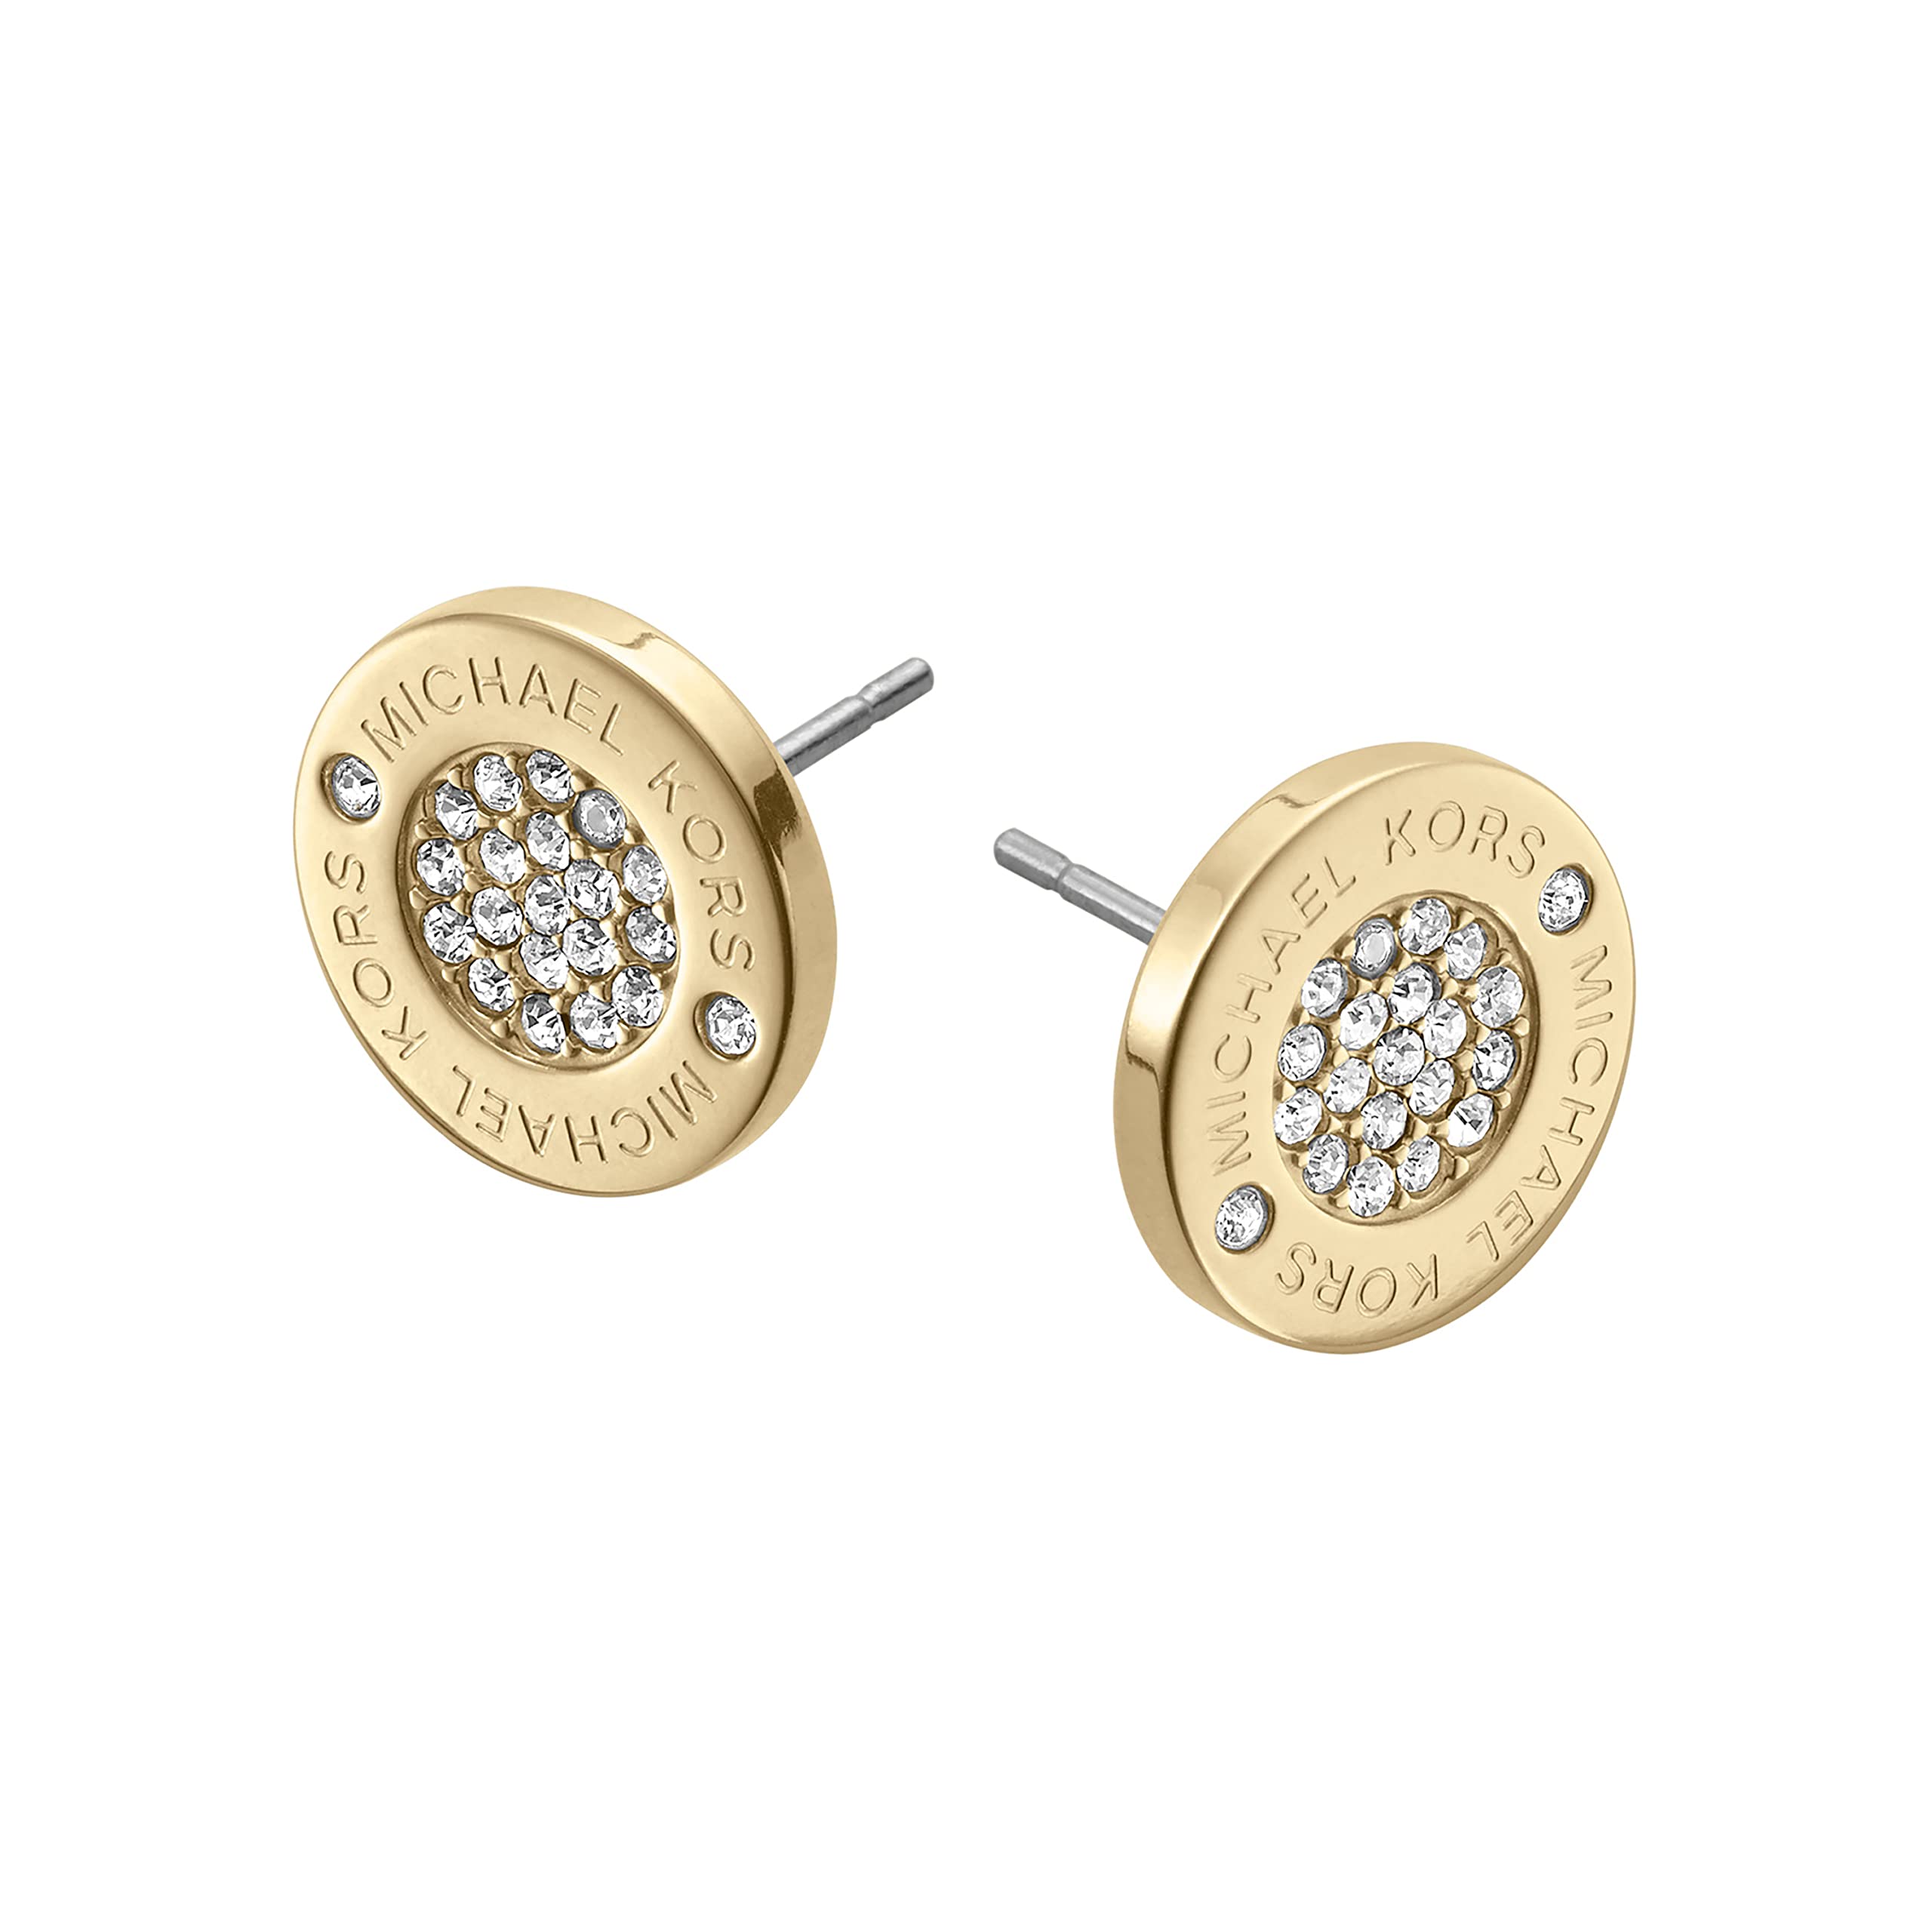 Ladies Michael Kors Jewellery Stainless Steel Glam Stud Earring  MKJ4705040  WatchShopcom